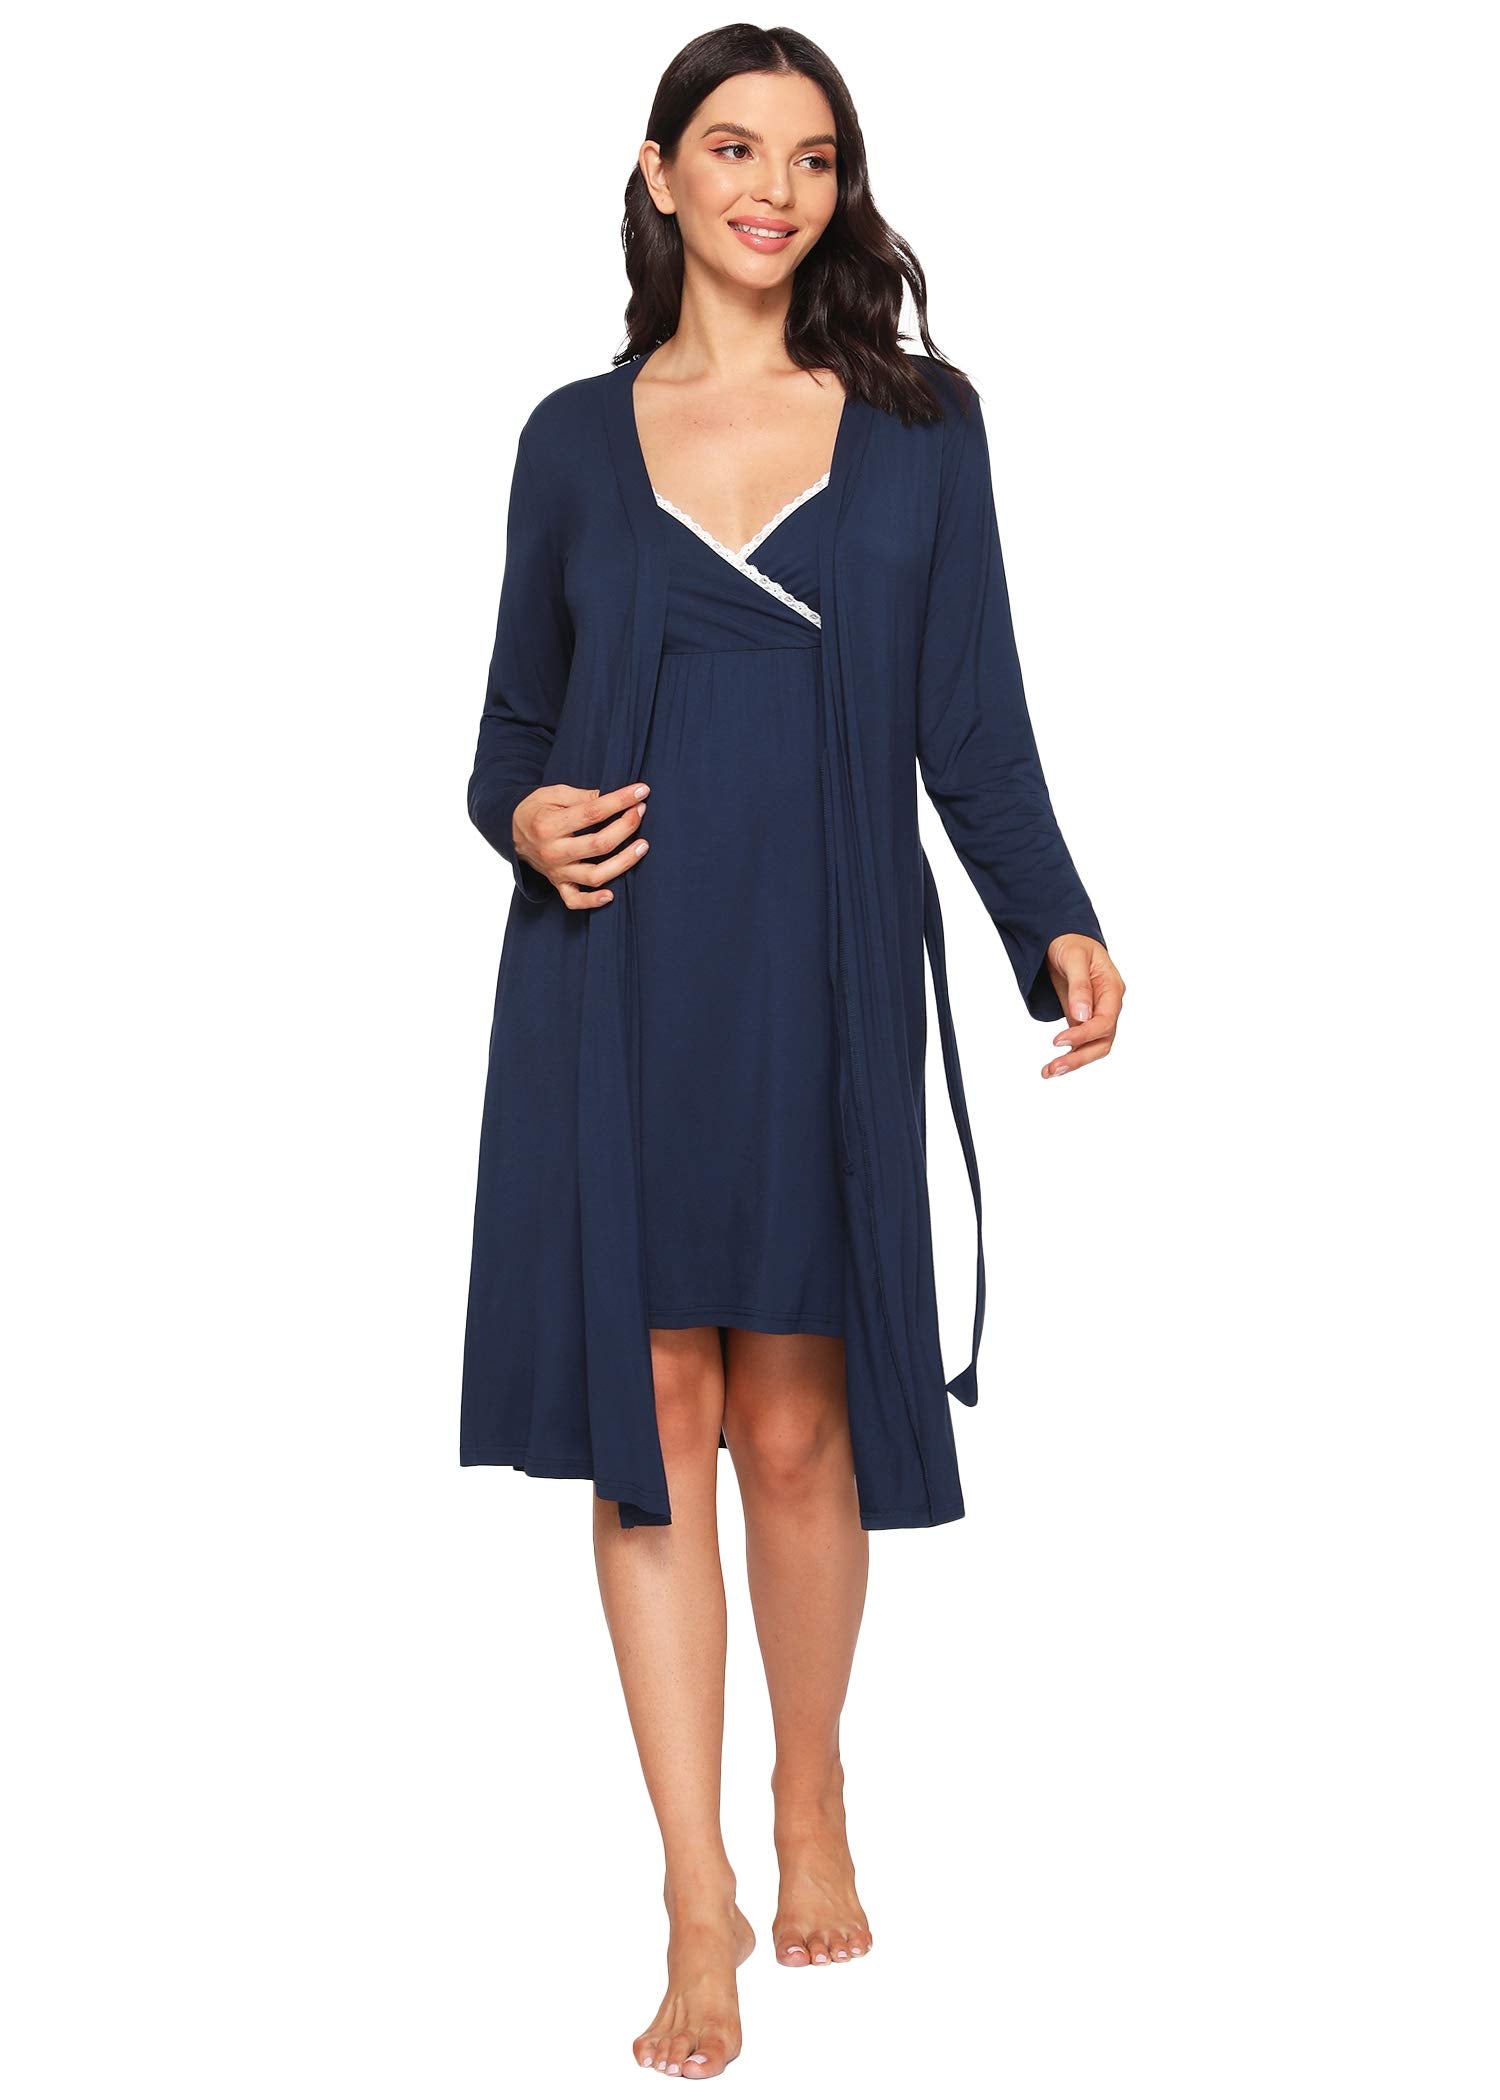 Women's Bamboo Viscose Nursing Nightgown and Robe Set - Latuza